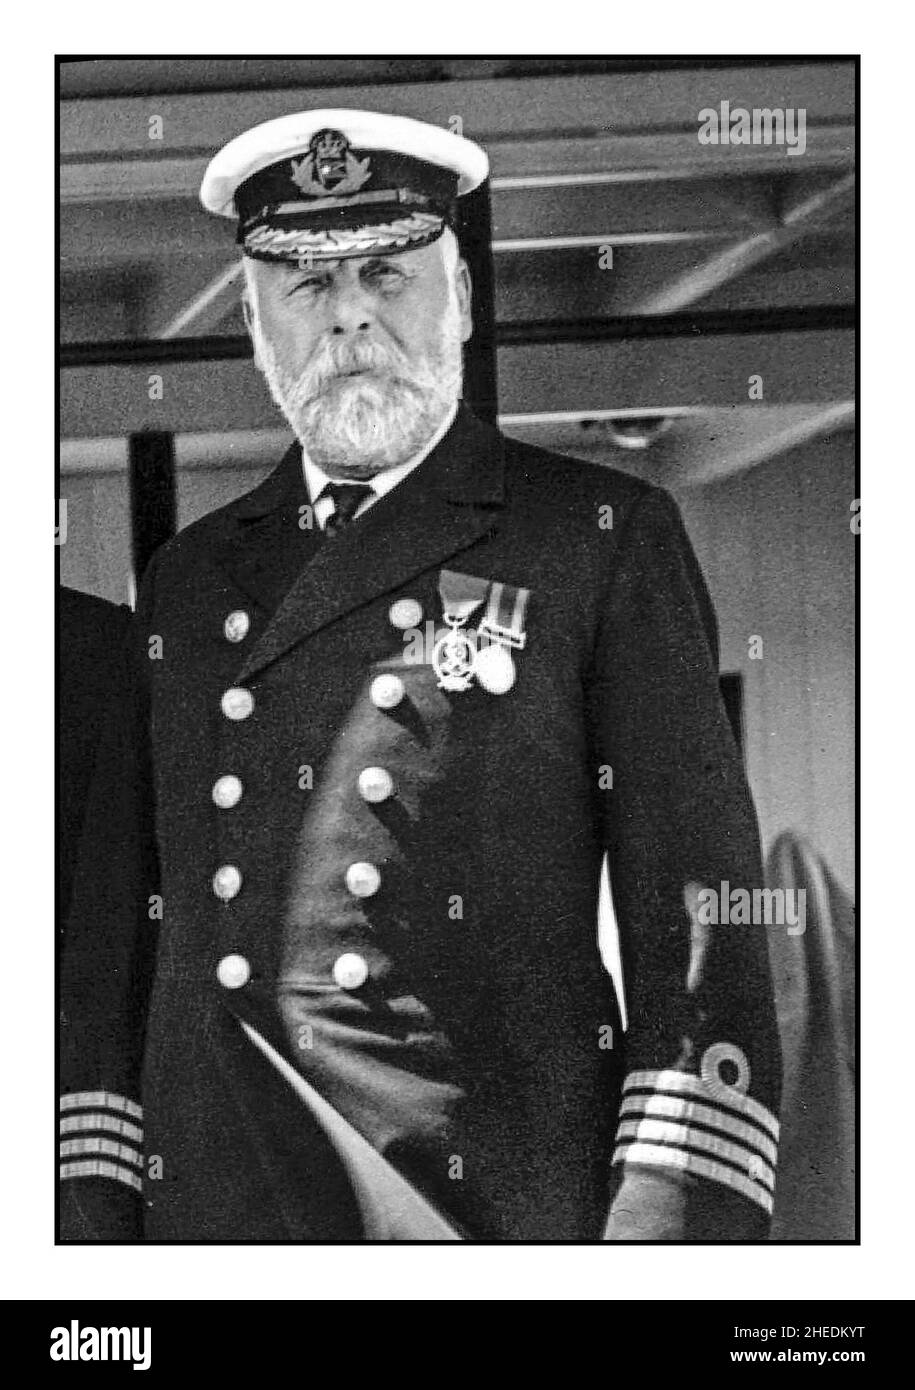 TITANIC CAPTAIN EDWARD SMITH 9th June 1911 .Captain Edward Smith, berühmt für seine Rolle am Steuer der Titanic, Kapitän während der verheerenden letzten Reise und Untergang der Titanic. Er ging mit seinem Schiff hinunter. Stockfoto